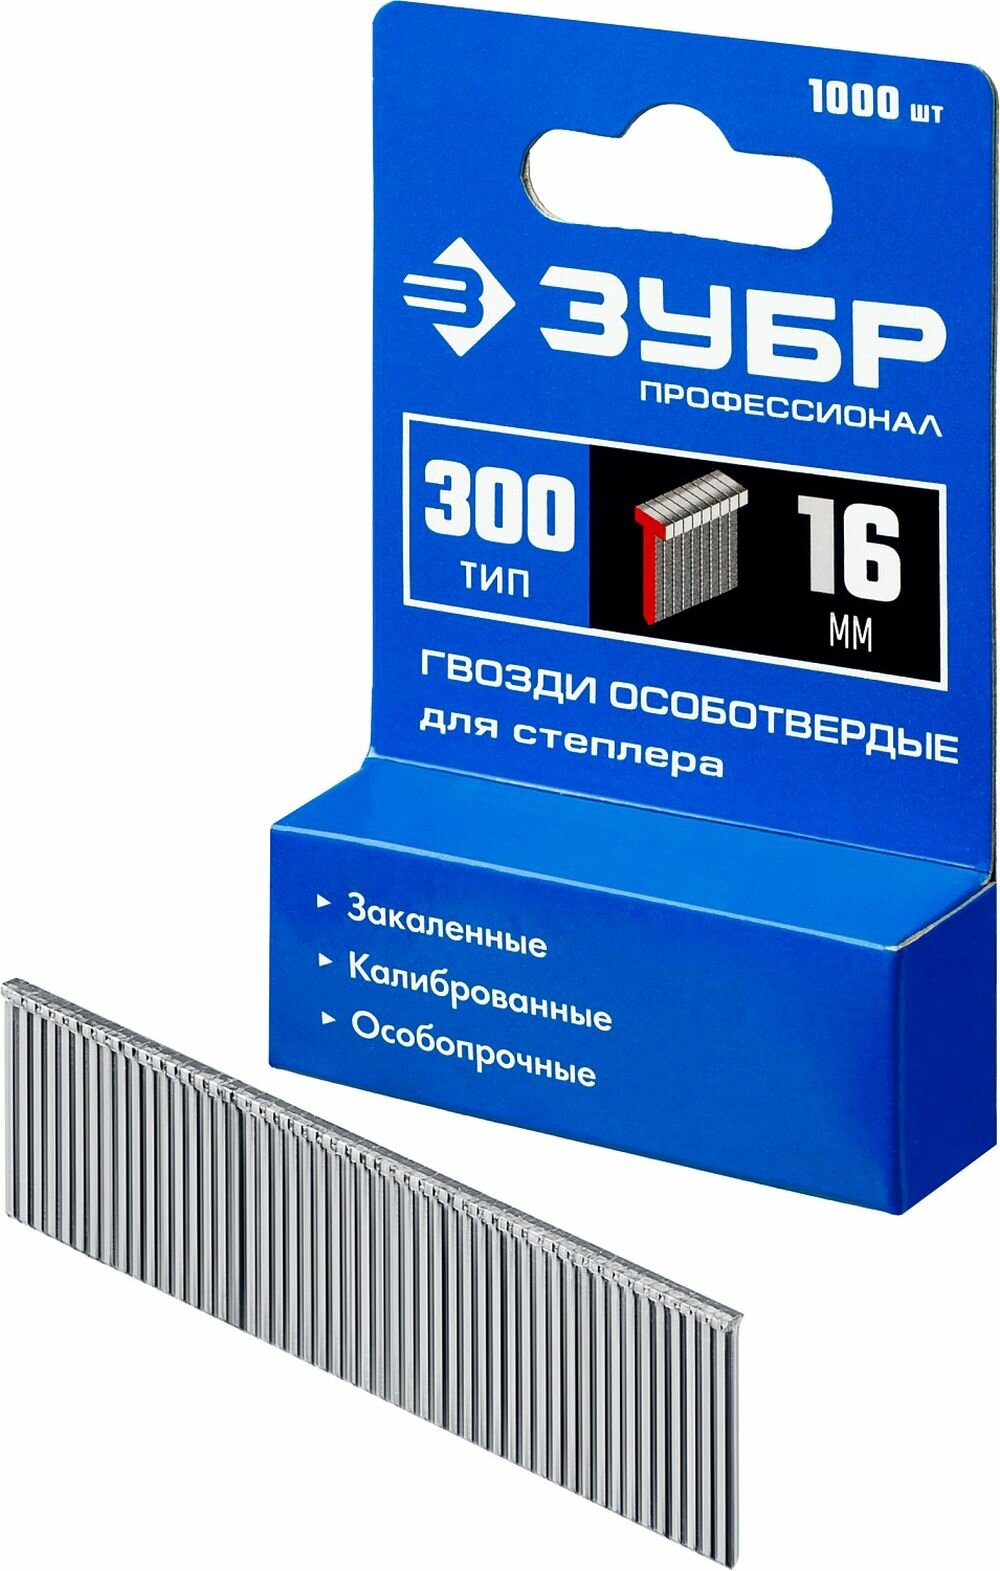 Гвозди для степлера ЗУБР тип 300 16 мм 1000 шт. 31643-16